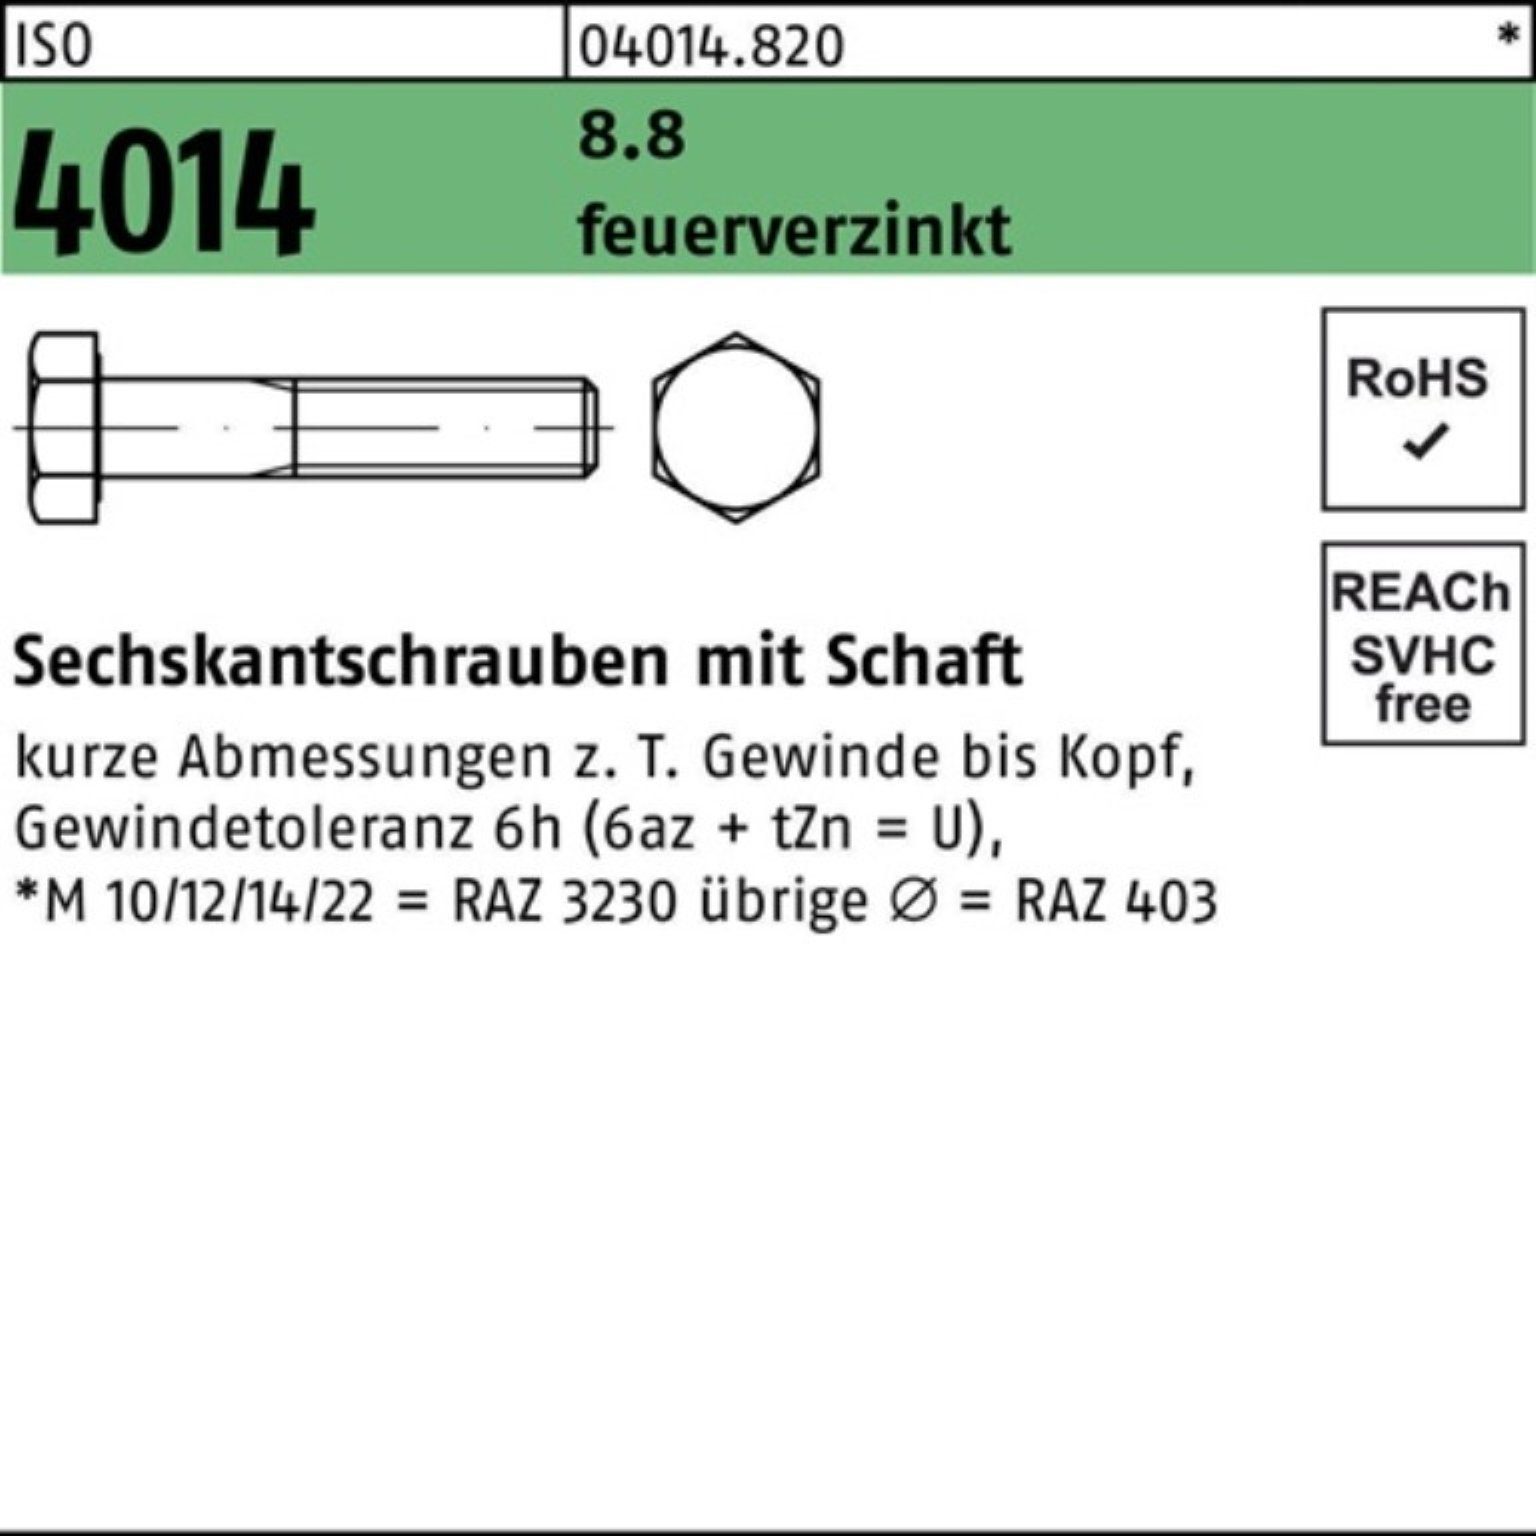 Bufab Sechskantschraube 100er Pack Sechskantschraube ISO 4014 Schaft M10x 75 8.8 feuerverz. 10